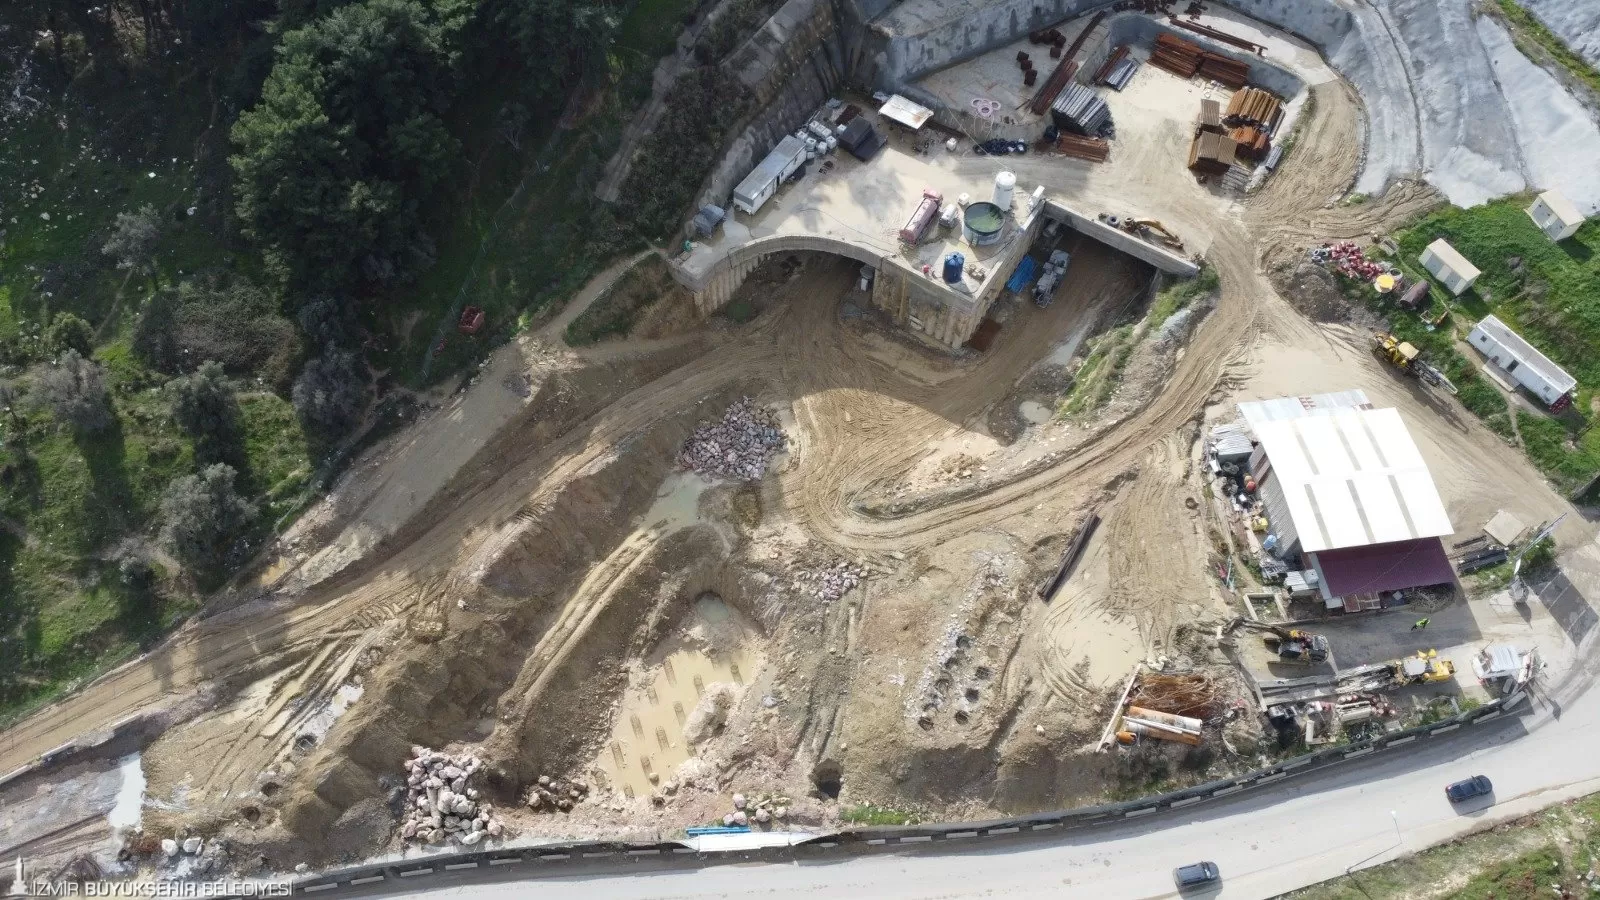 İzmir Büyükşehir Belediyesi'nin Buca ile Bornova'yı birbirine bağlayacak Onat Tüneli'nde kazı çalışmaları hızla ilerliyor. 